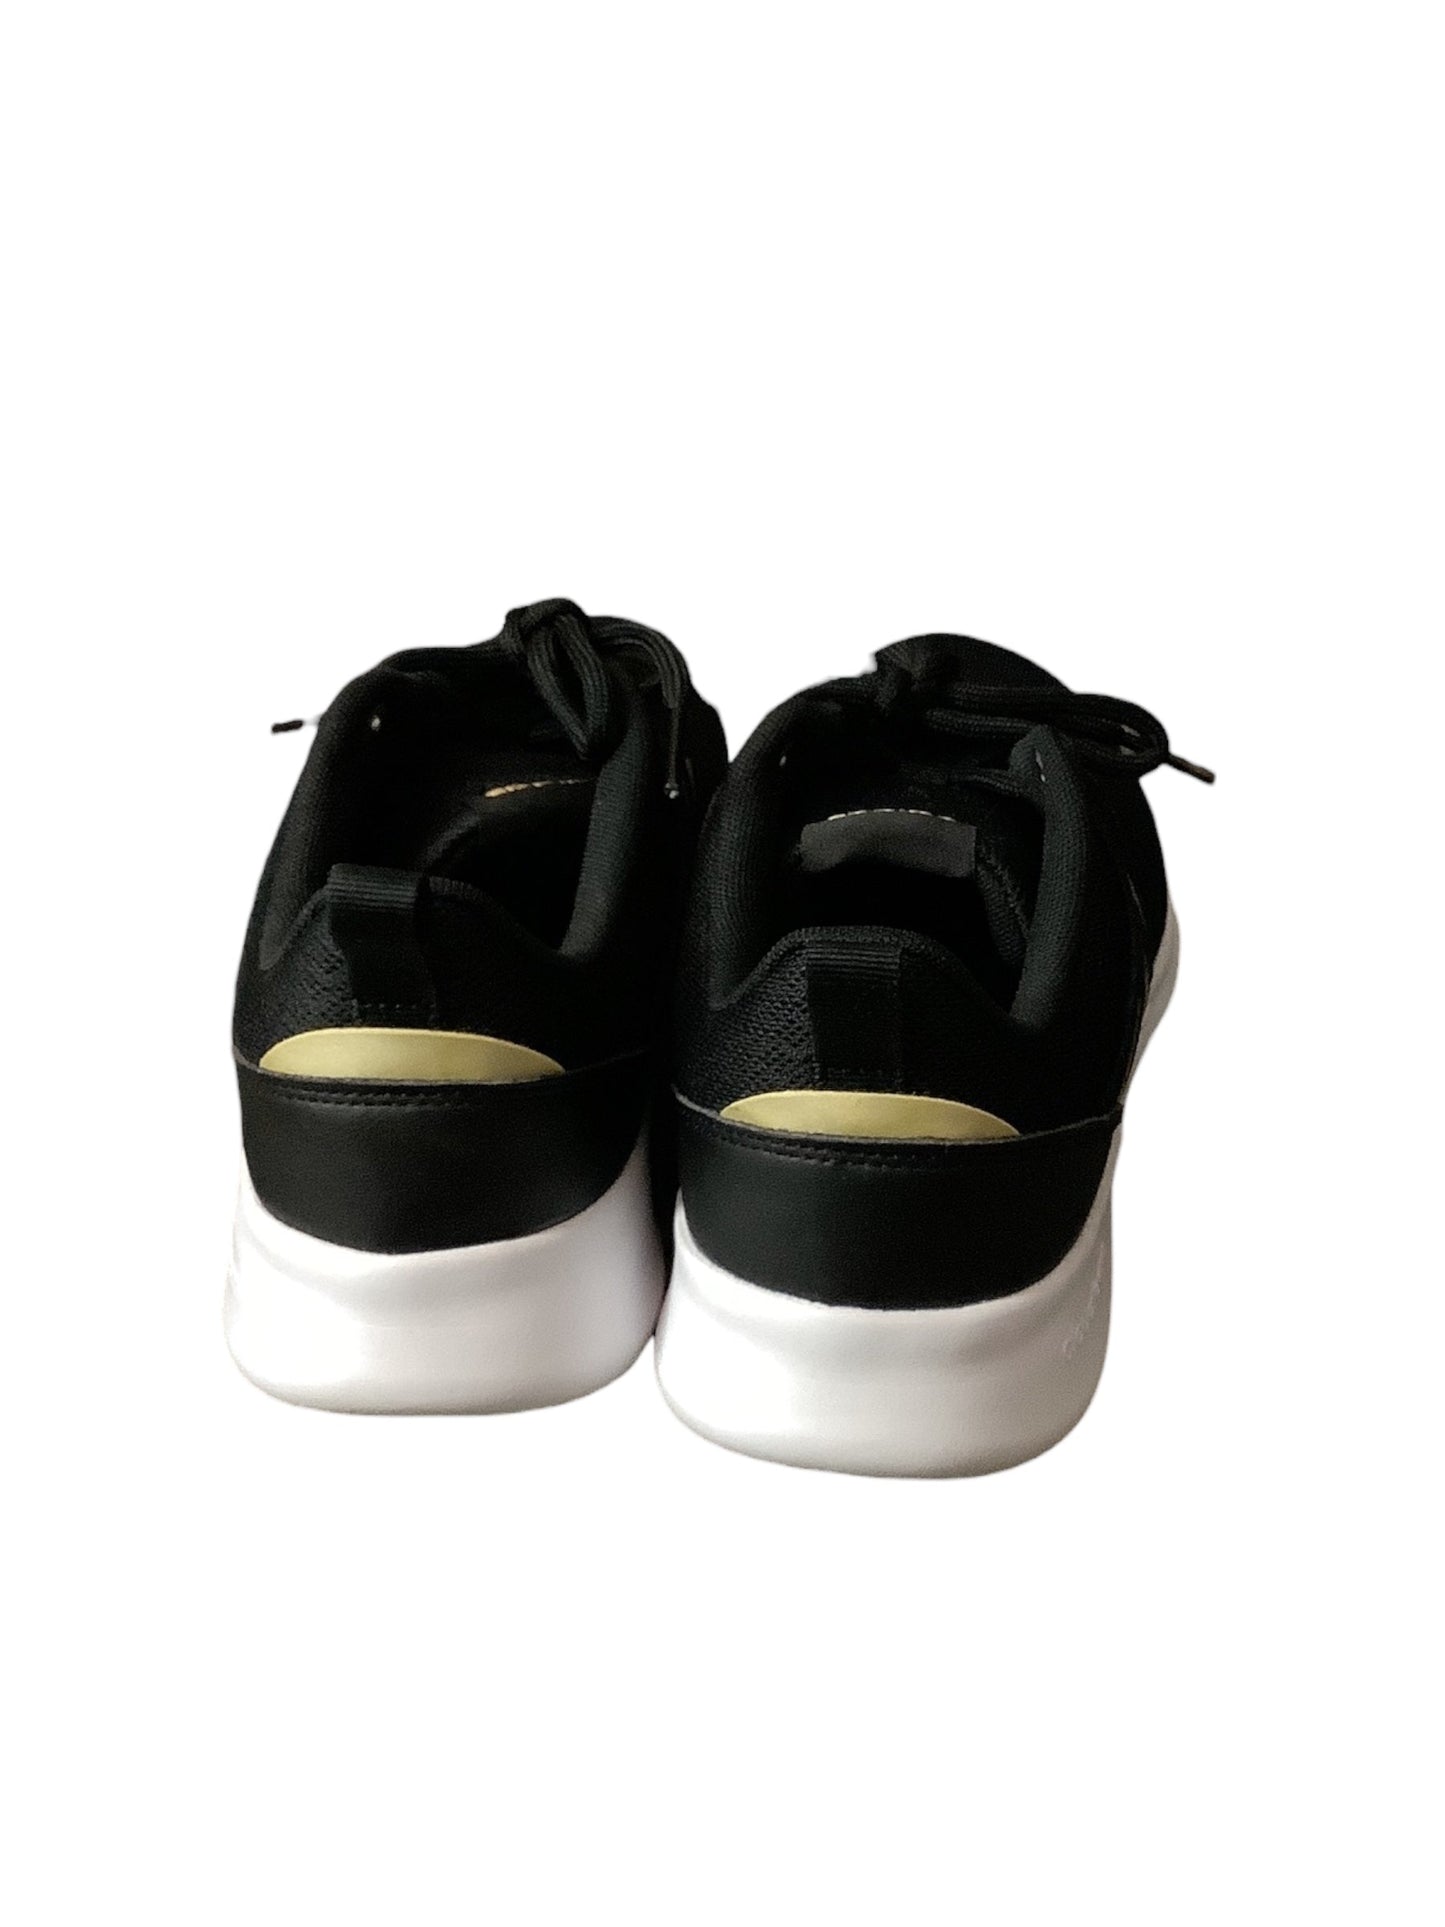 Black Shoes Athletic Adidas, Size 9